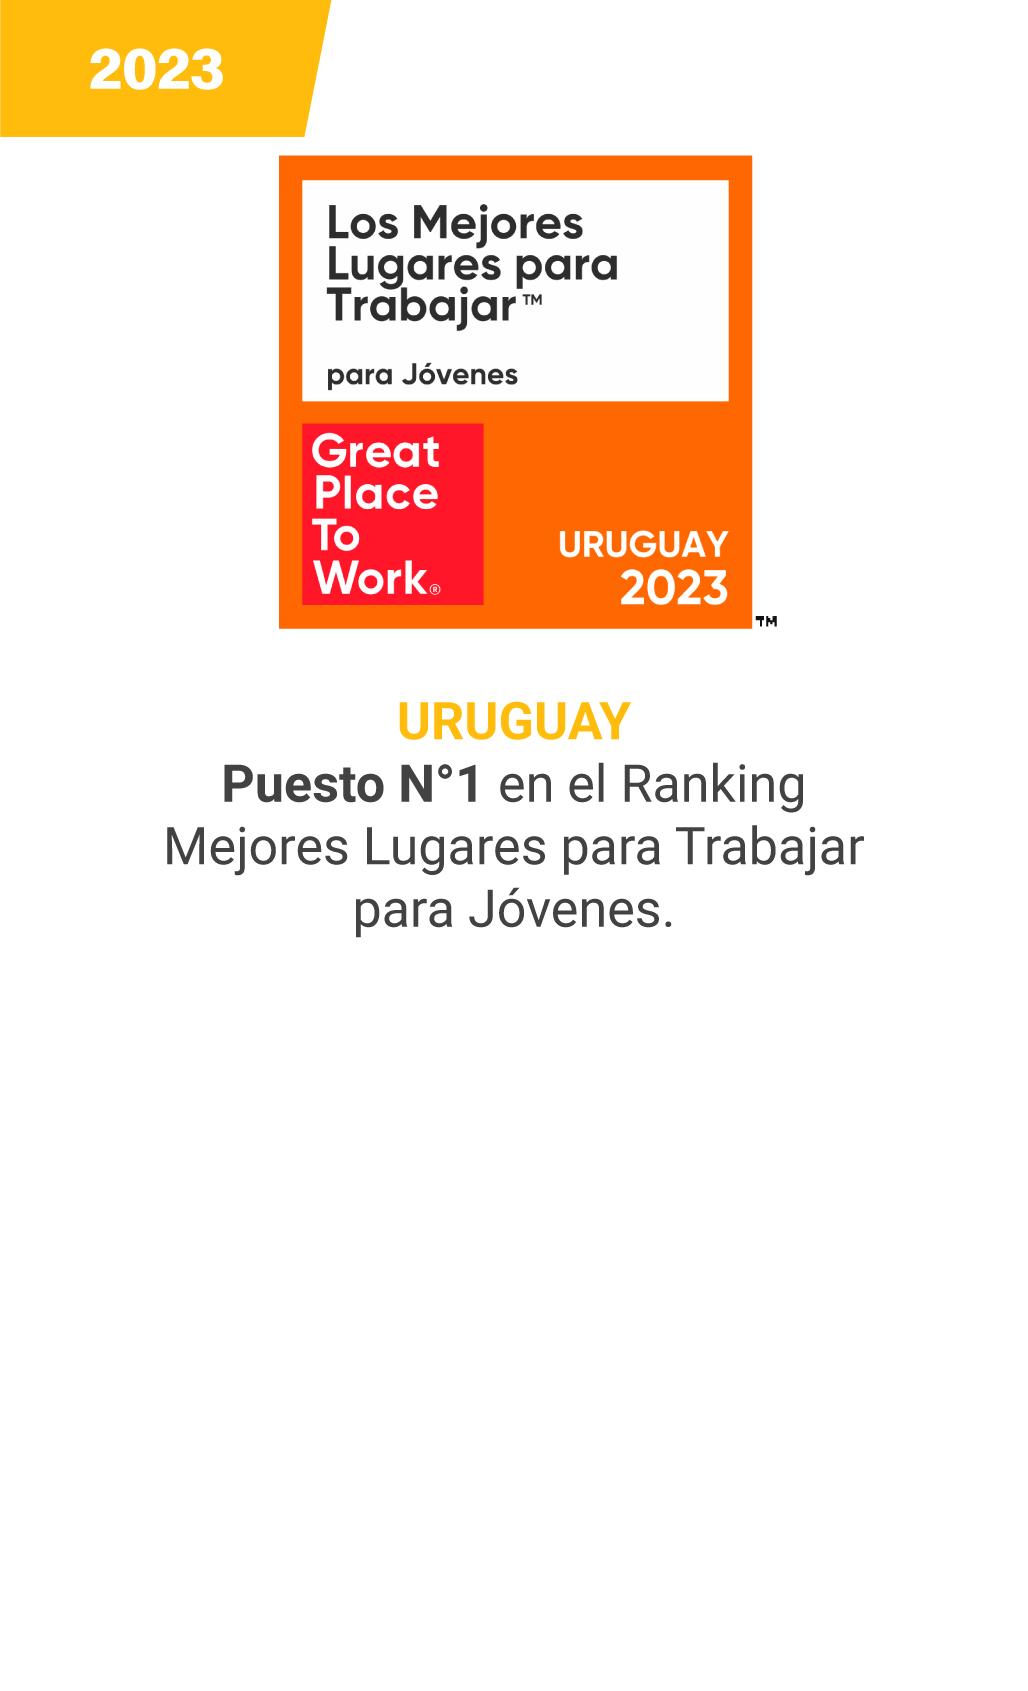 uruguay-v